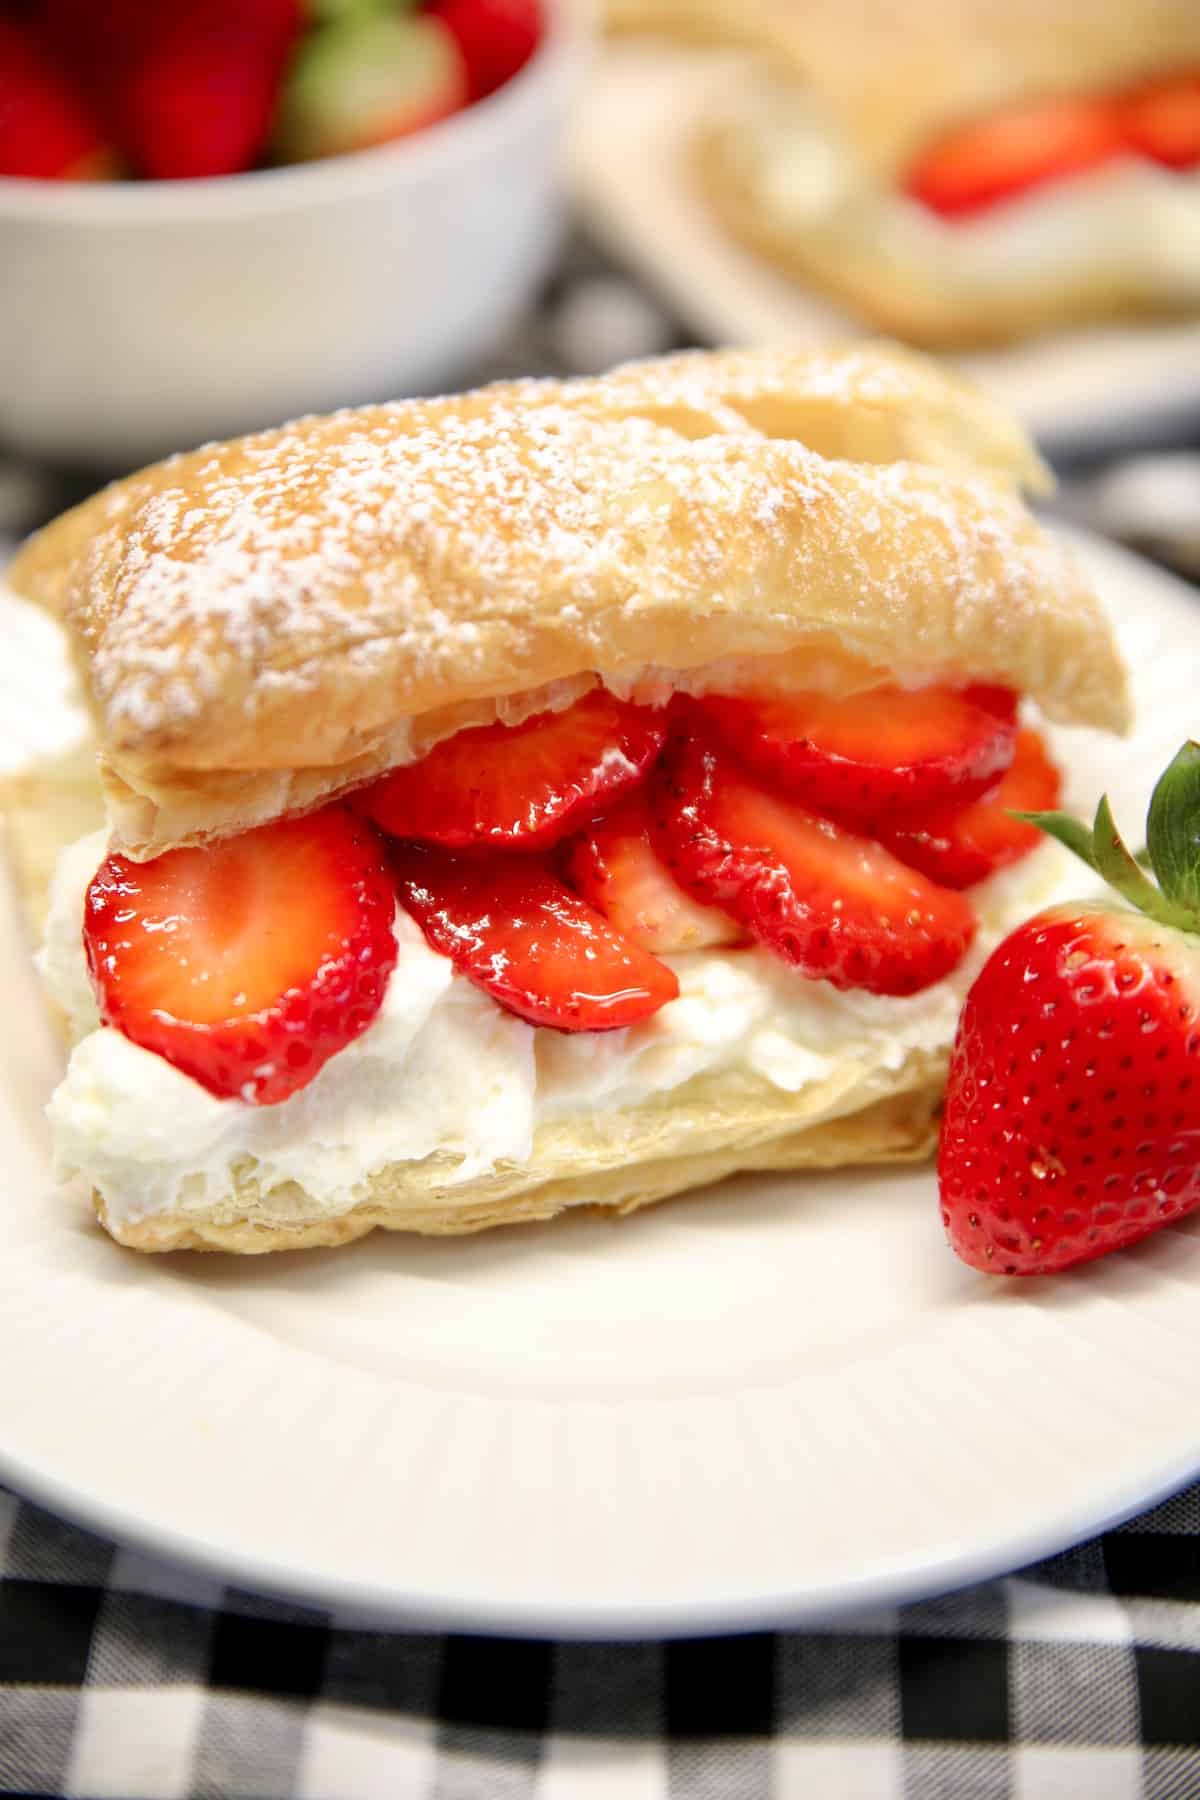 Strawberry Napoleon with pastry cream.